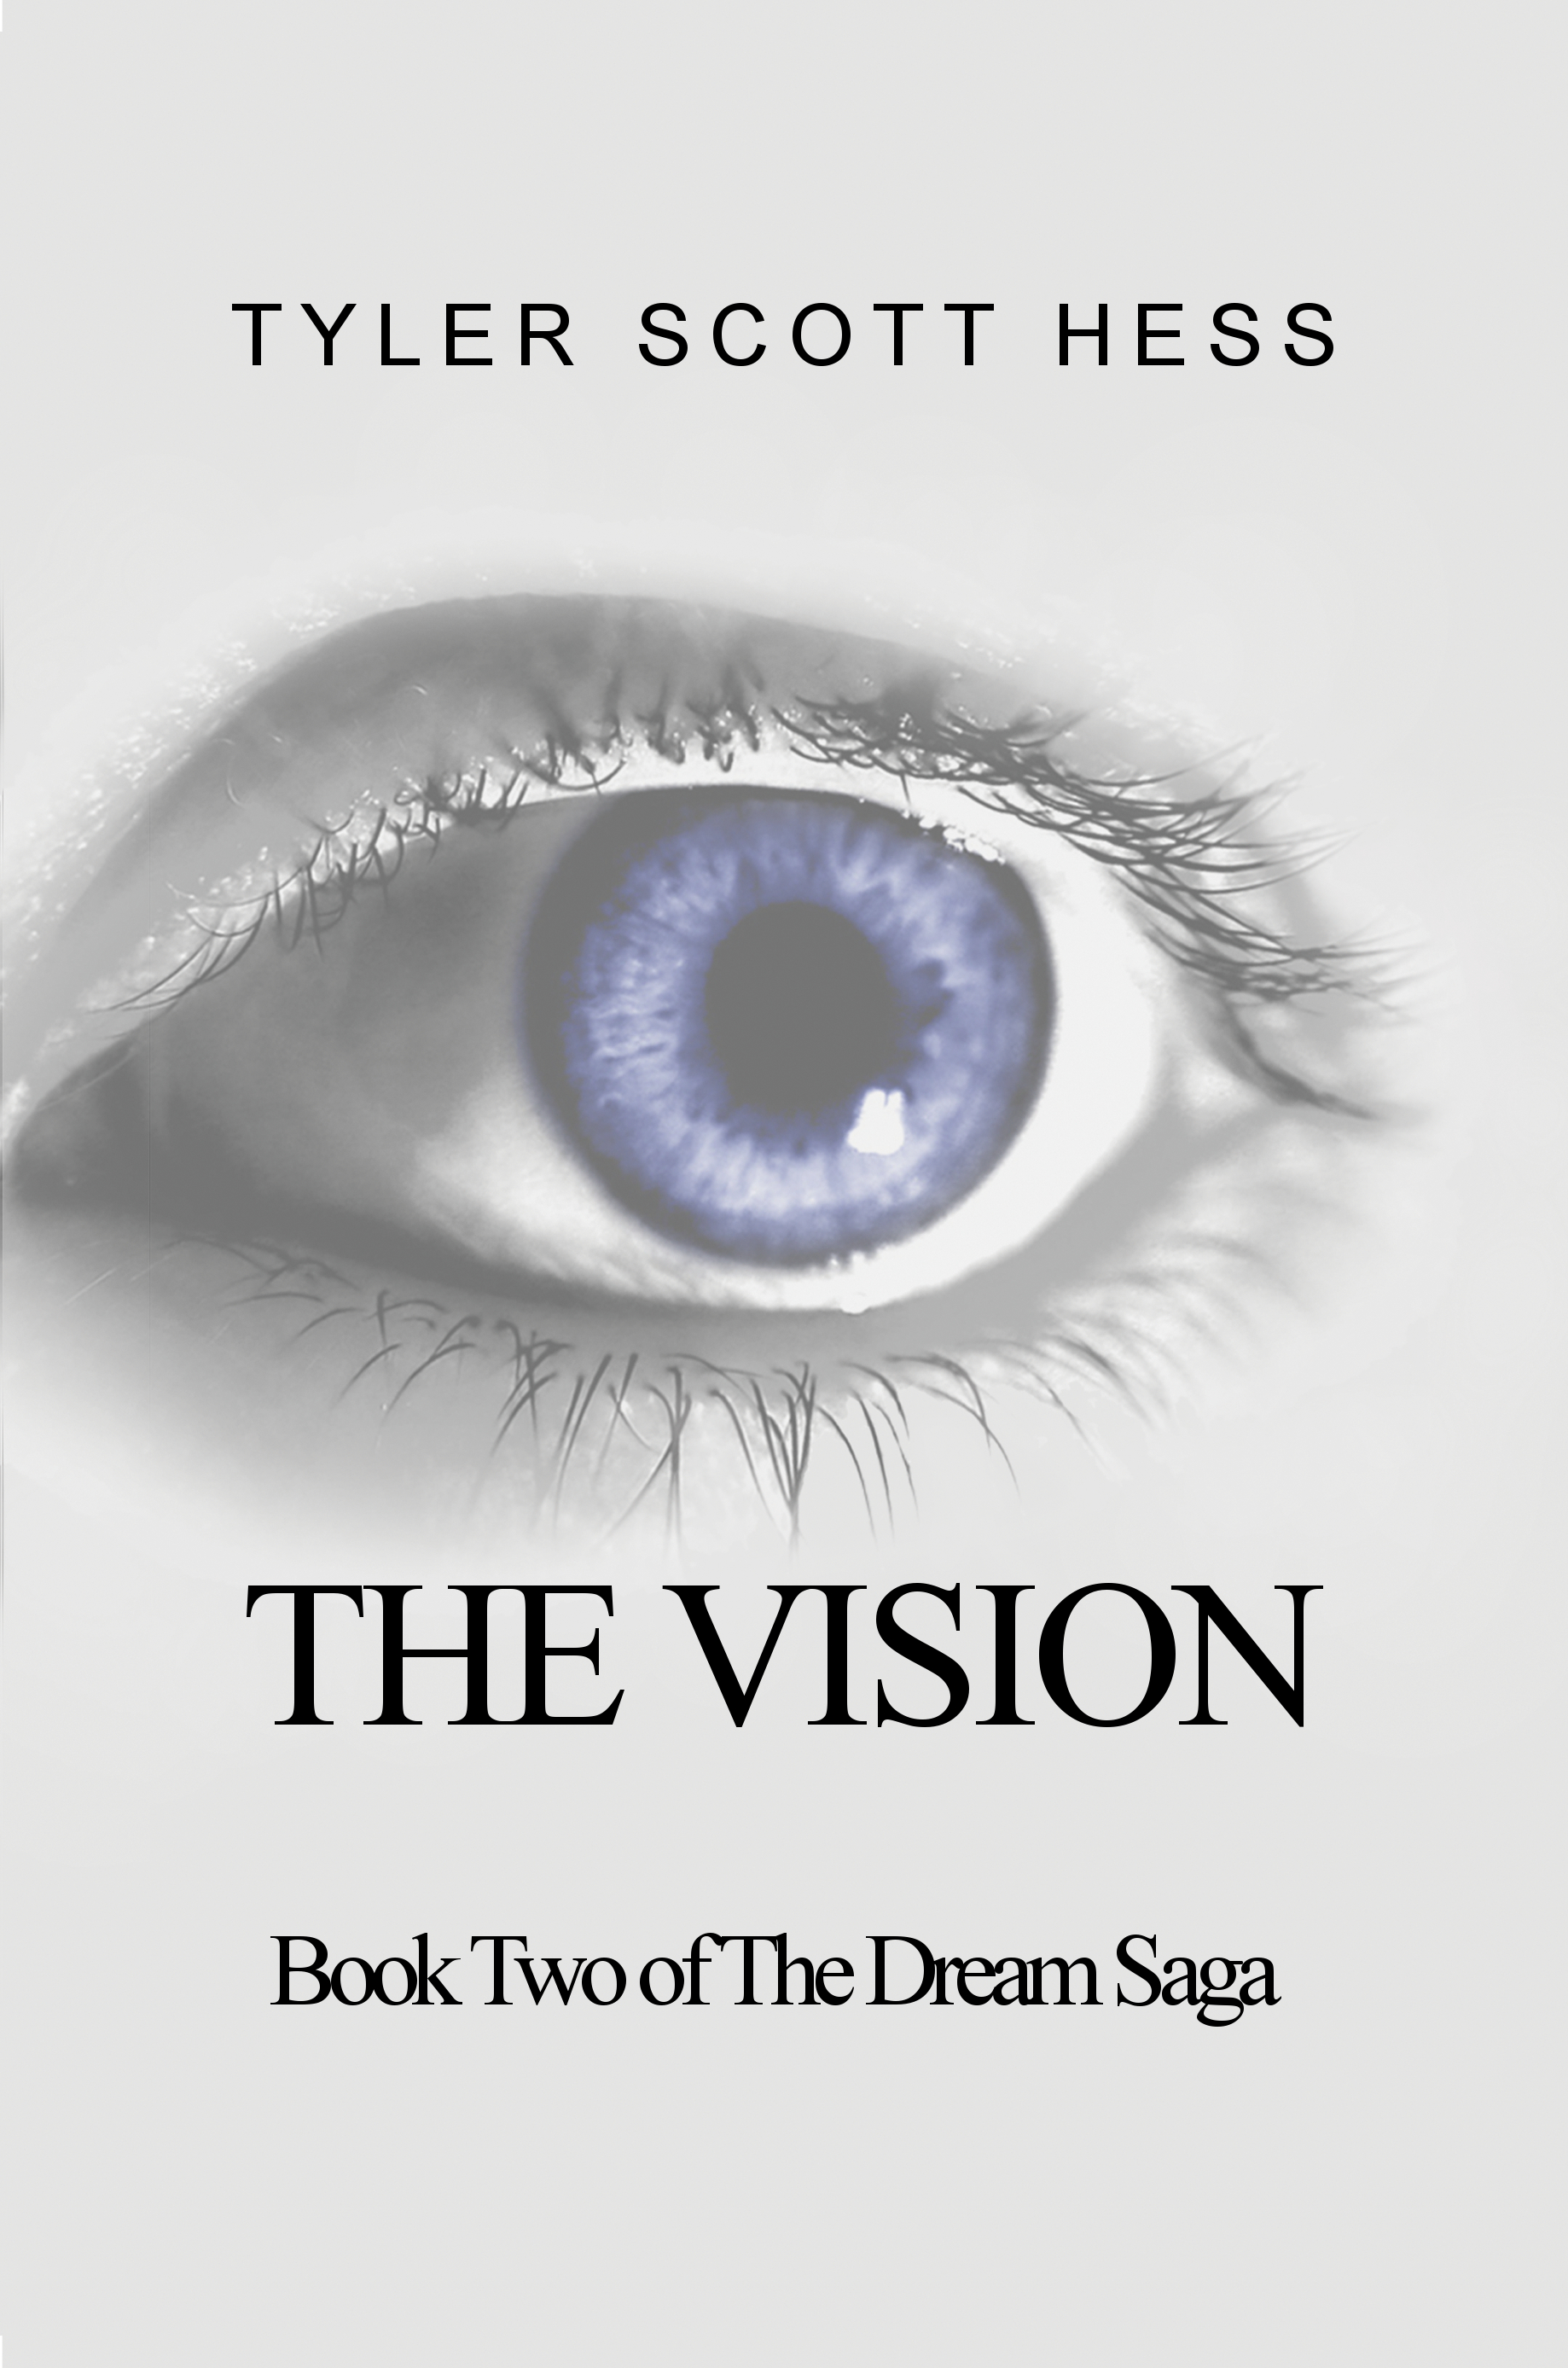 FREE: The Vision by Tyler Scott Hess by Tyler Scott Hess